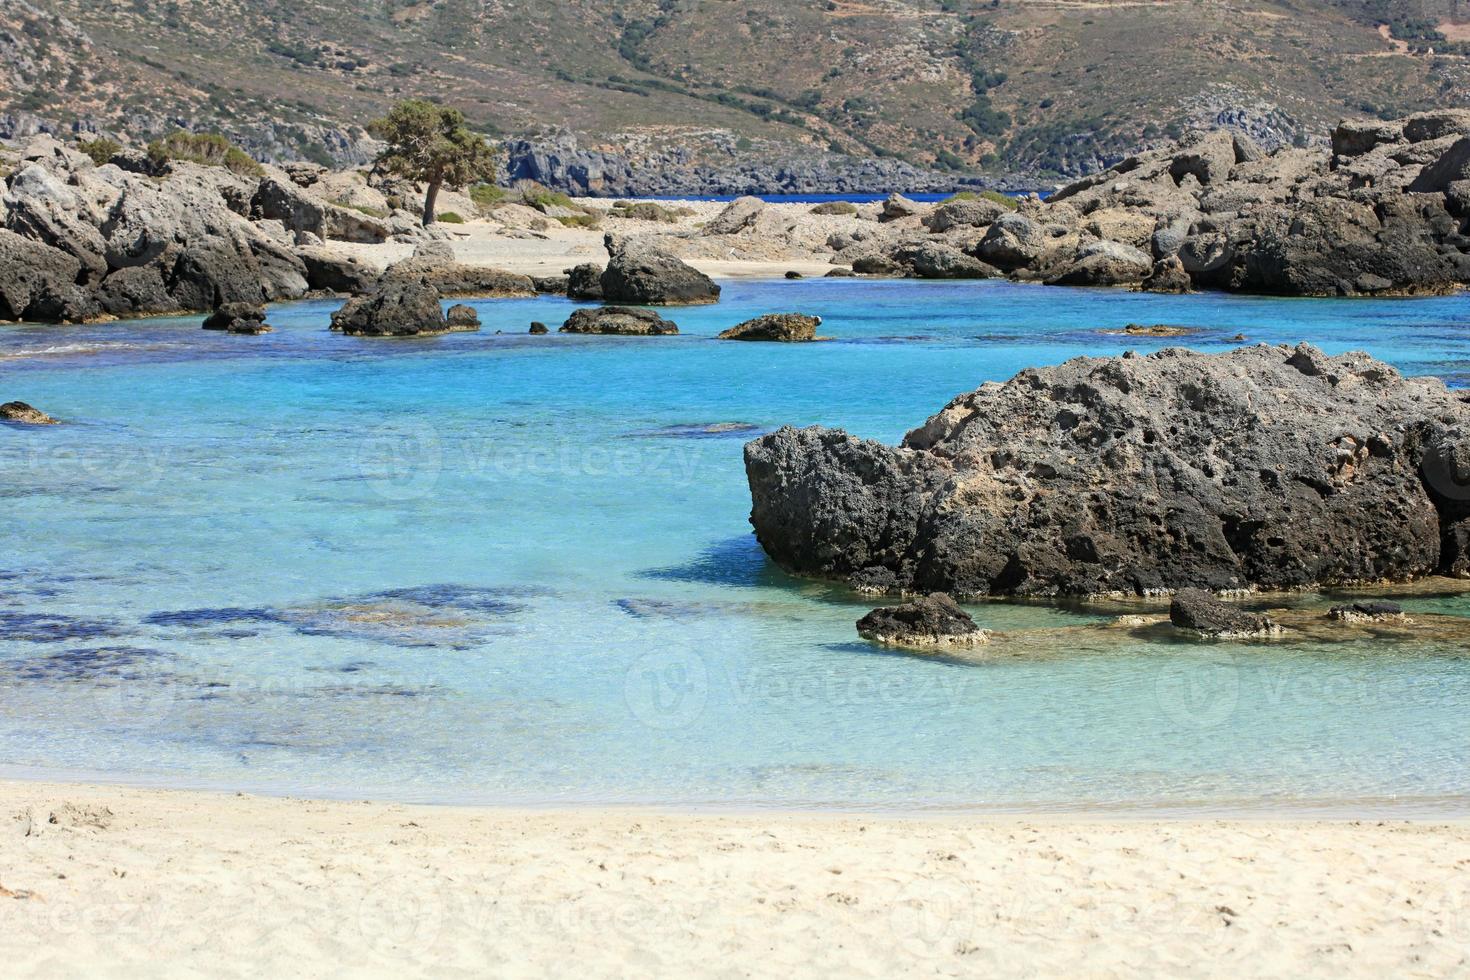 spiaggia di kedrodasos creta isola grecia laguna blu acque cristalline coralli foto